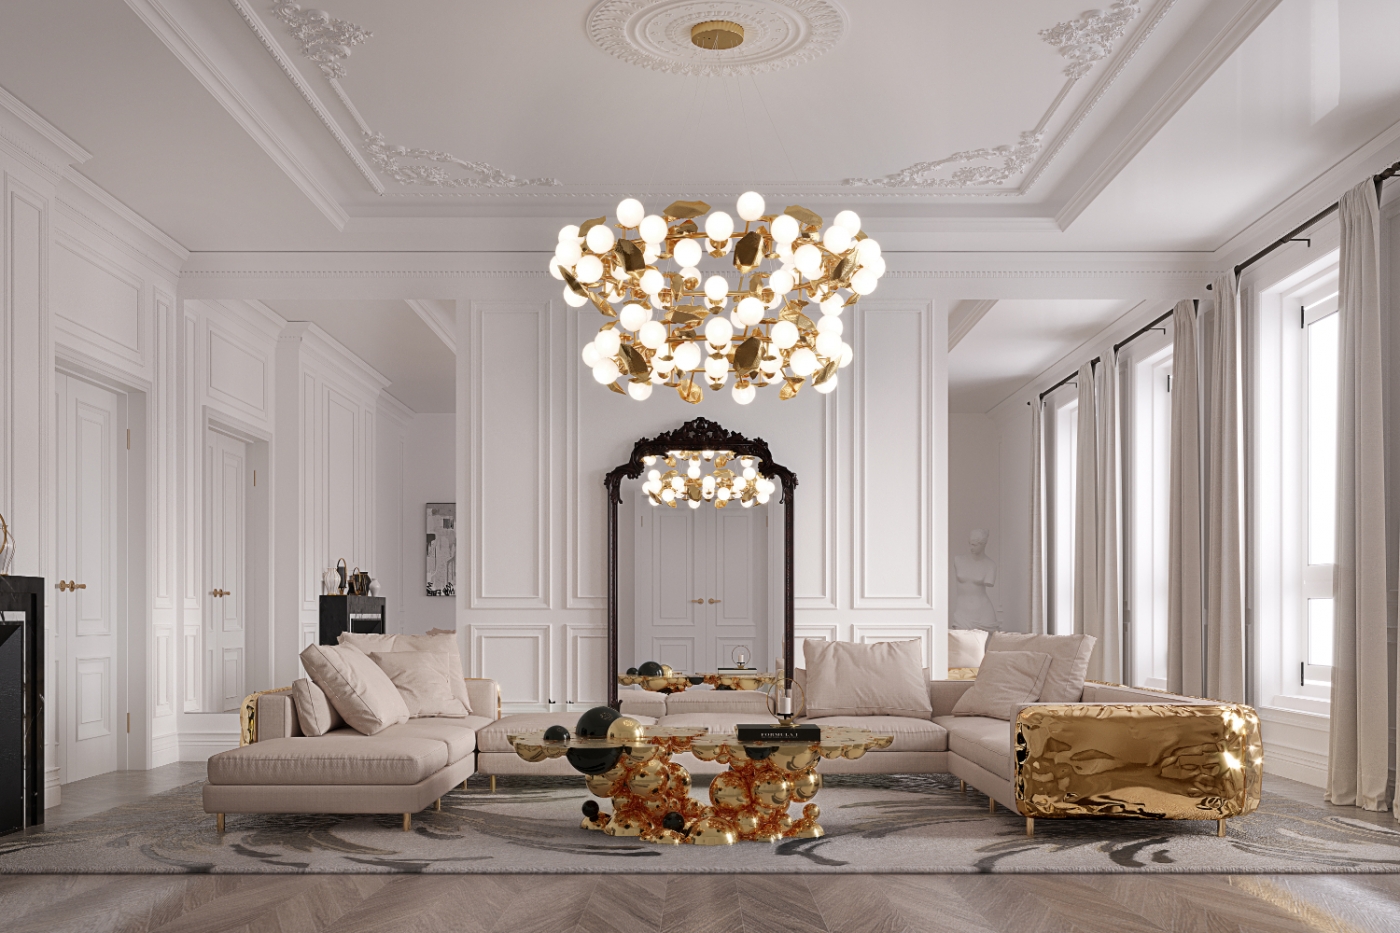 14 Contemporary Home Decor Ideas - Elegant and Affordable